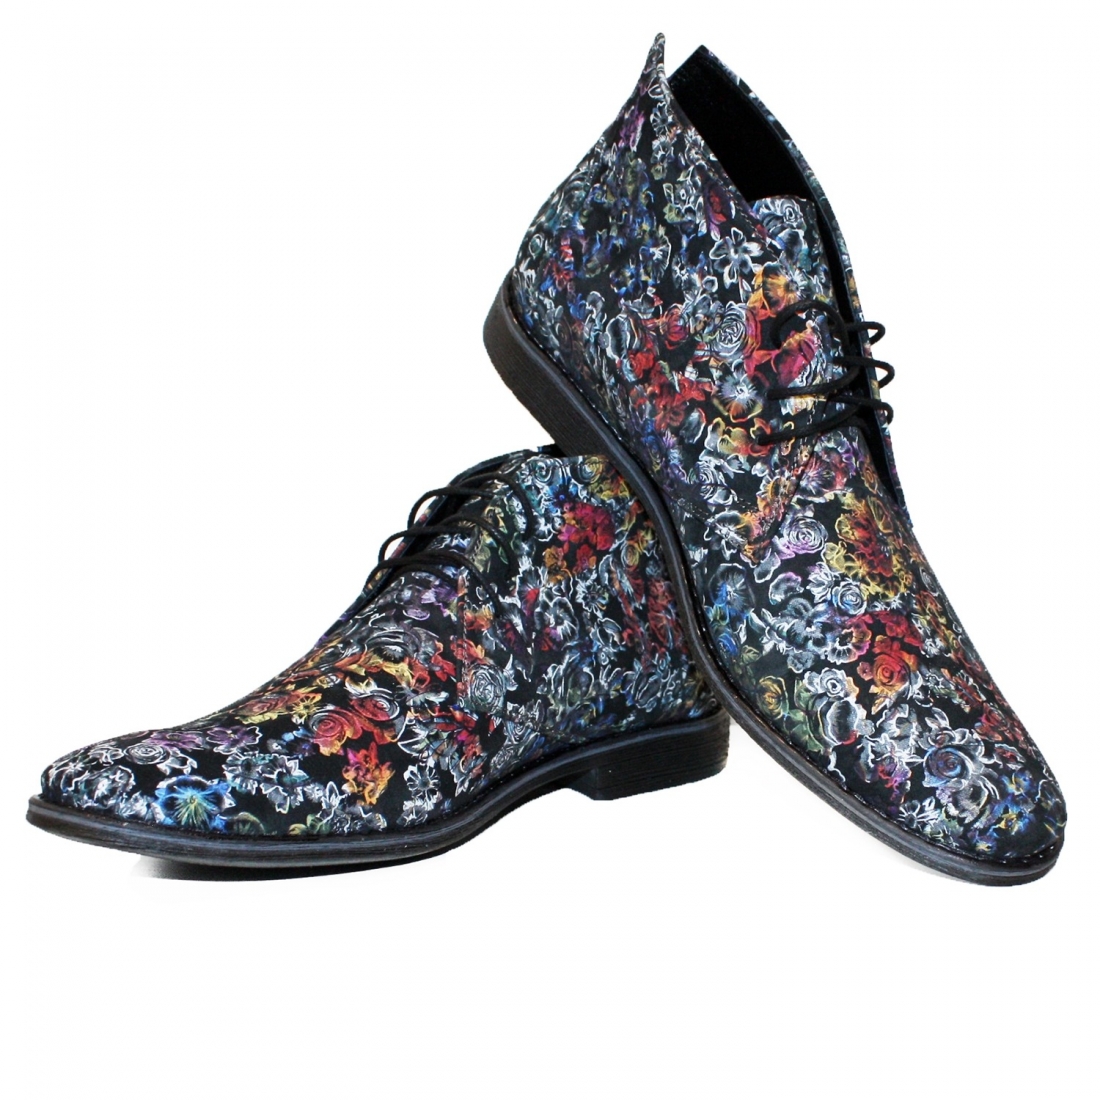 Modello Puciorro - チャッカブーツ - Handmade Colorful Italian Leather Shoes